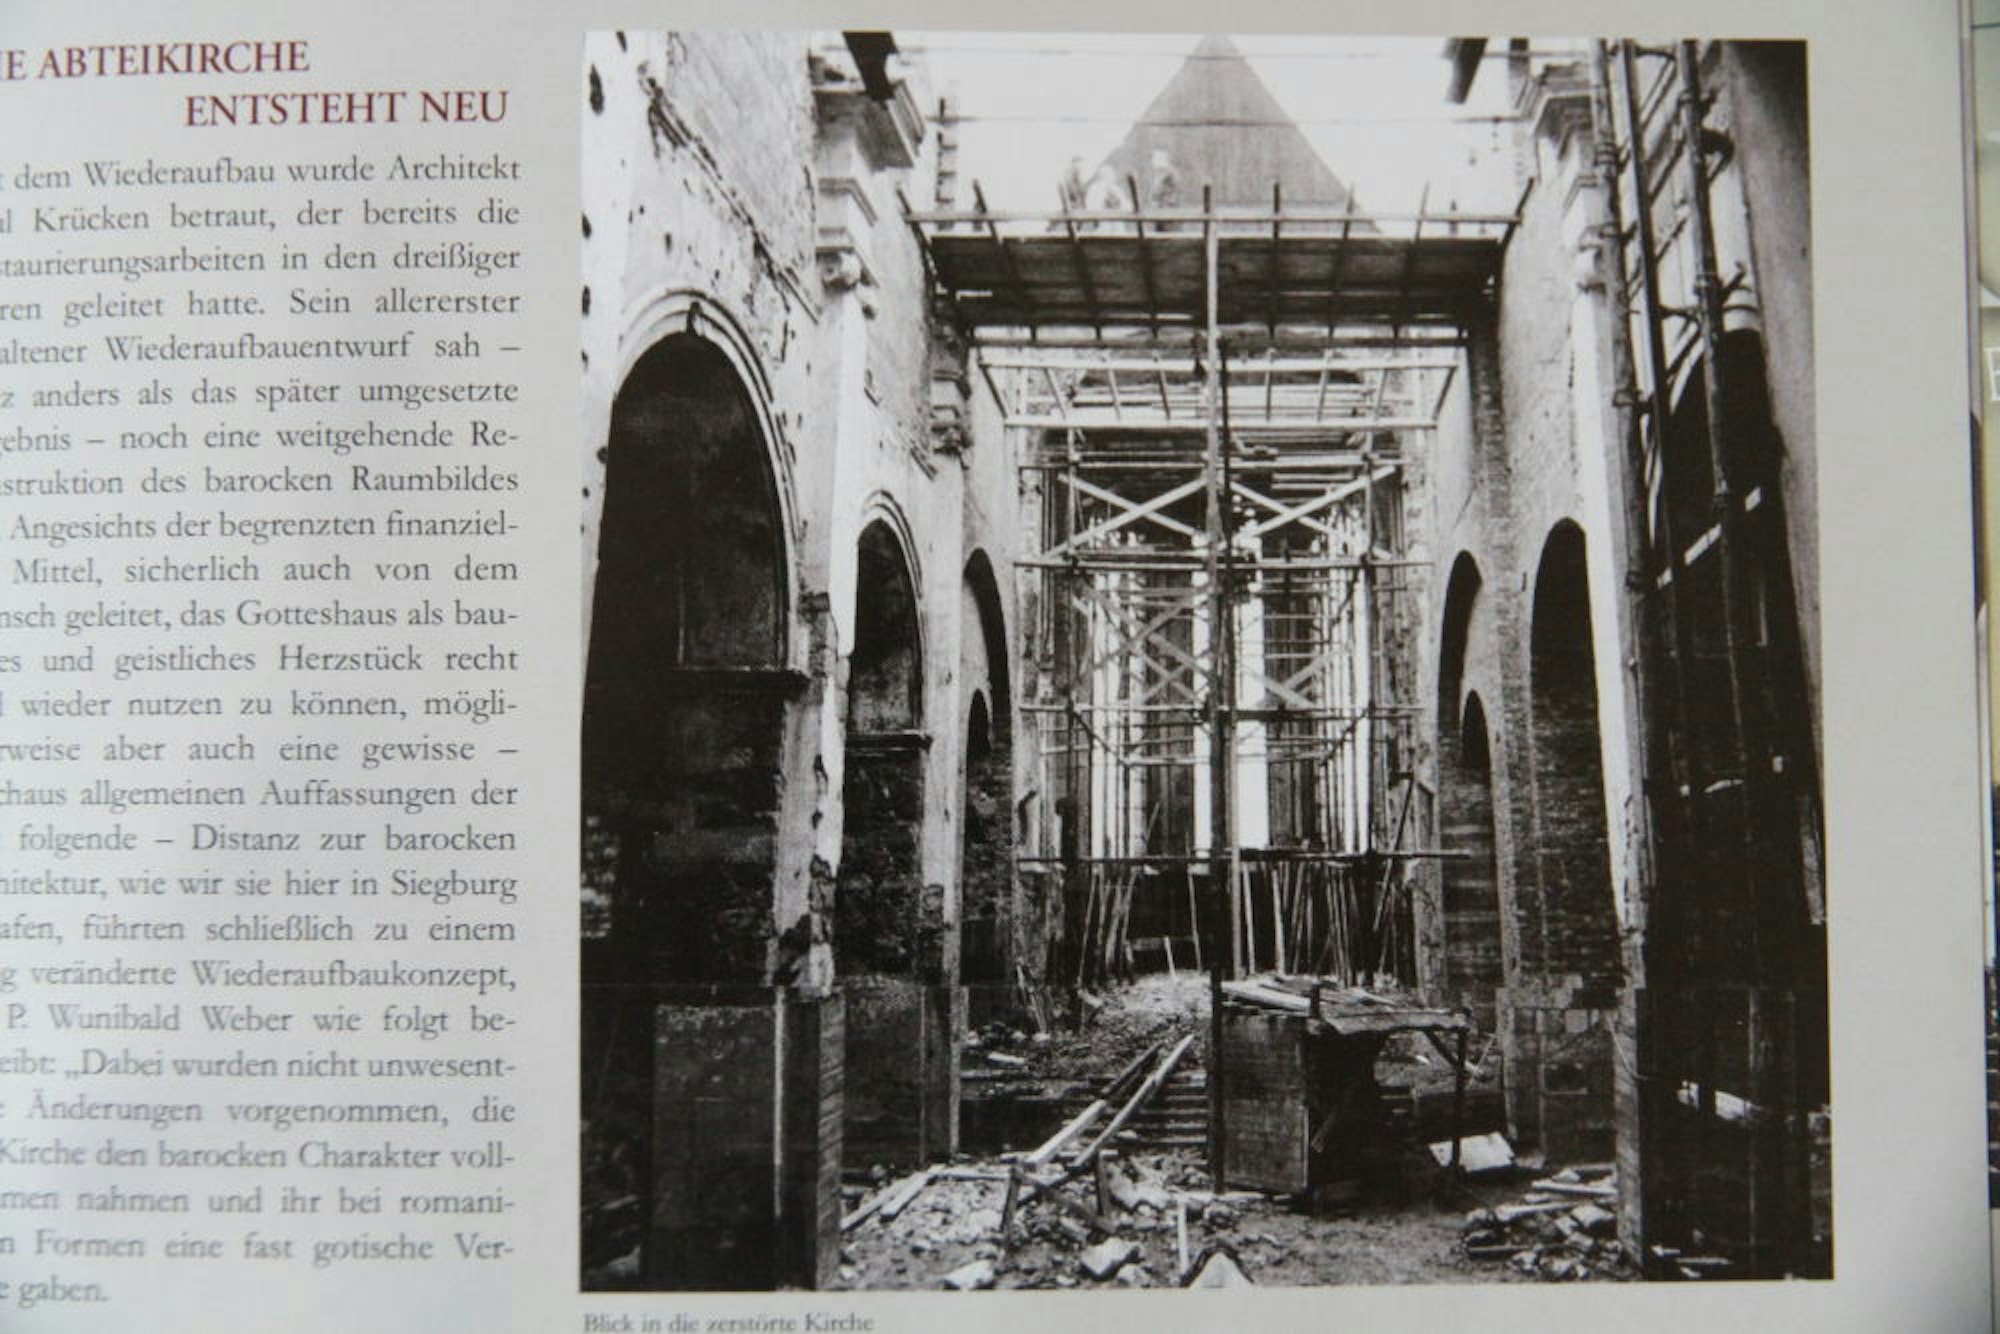 Die Abteikirche war bereits 1944 bei einem Bombenangriff zerstört worden.